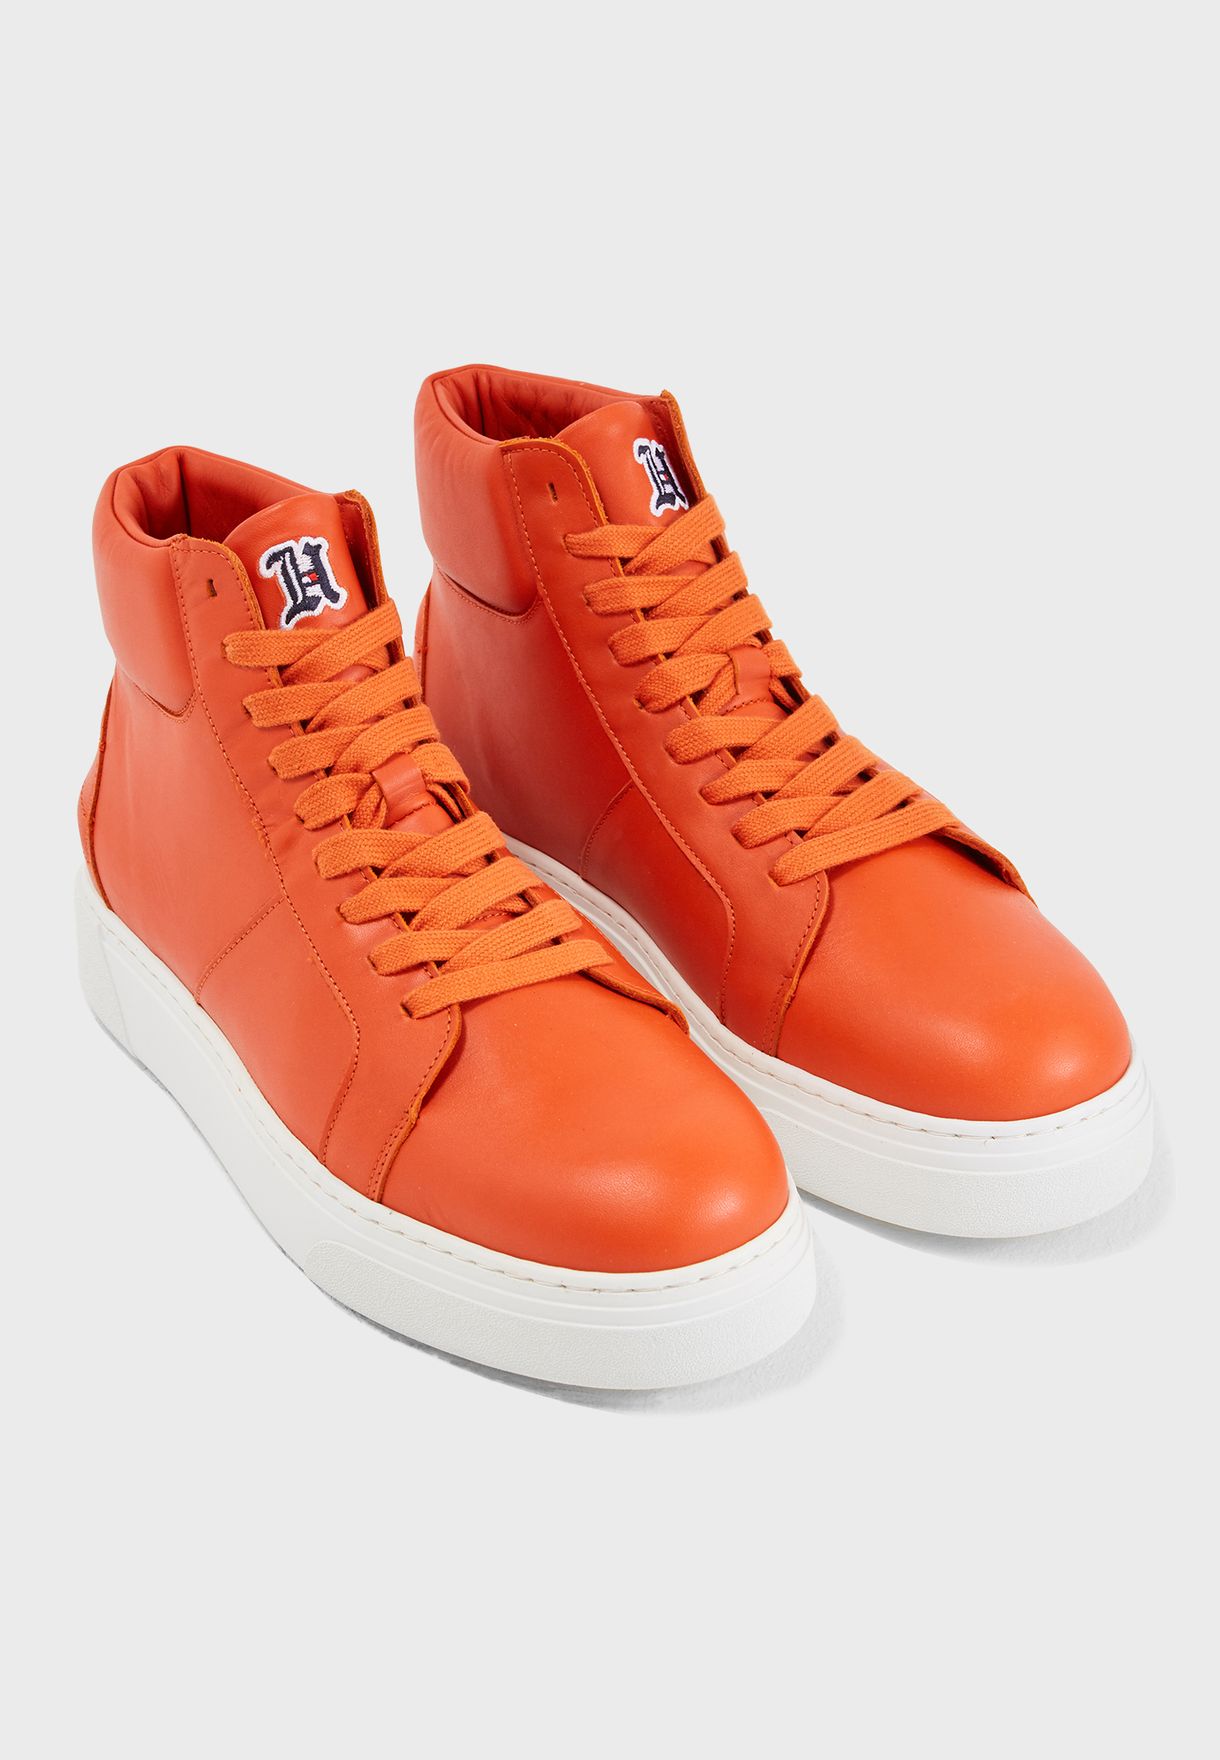 tommy hilfiger orange shoes